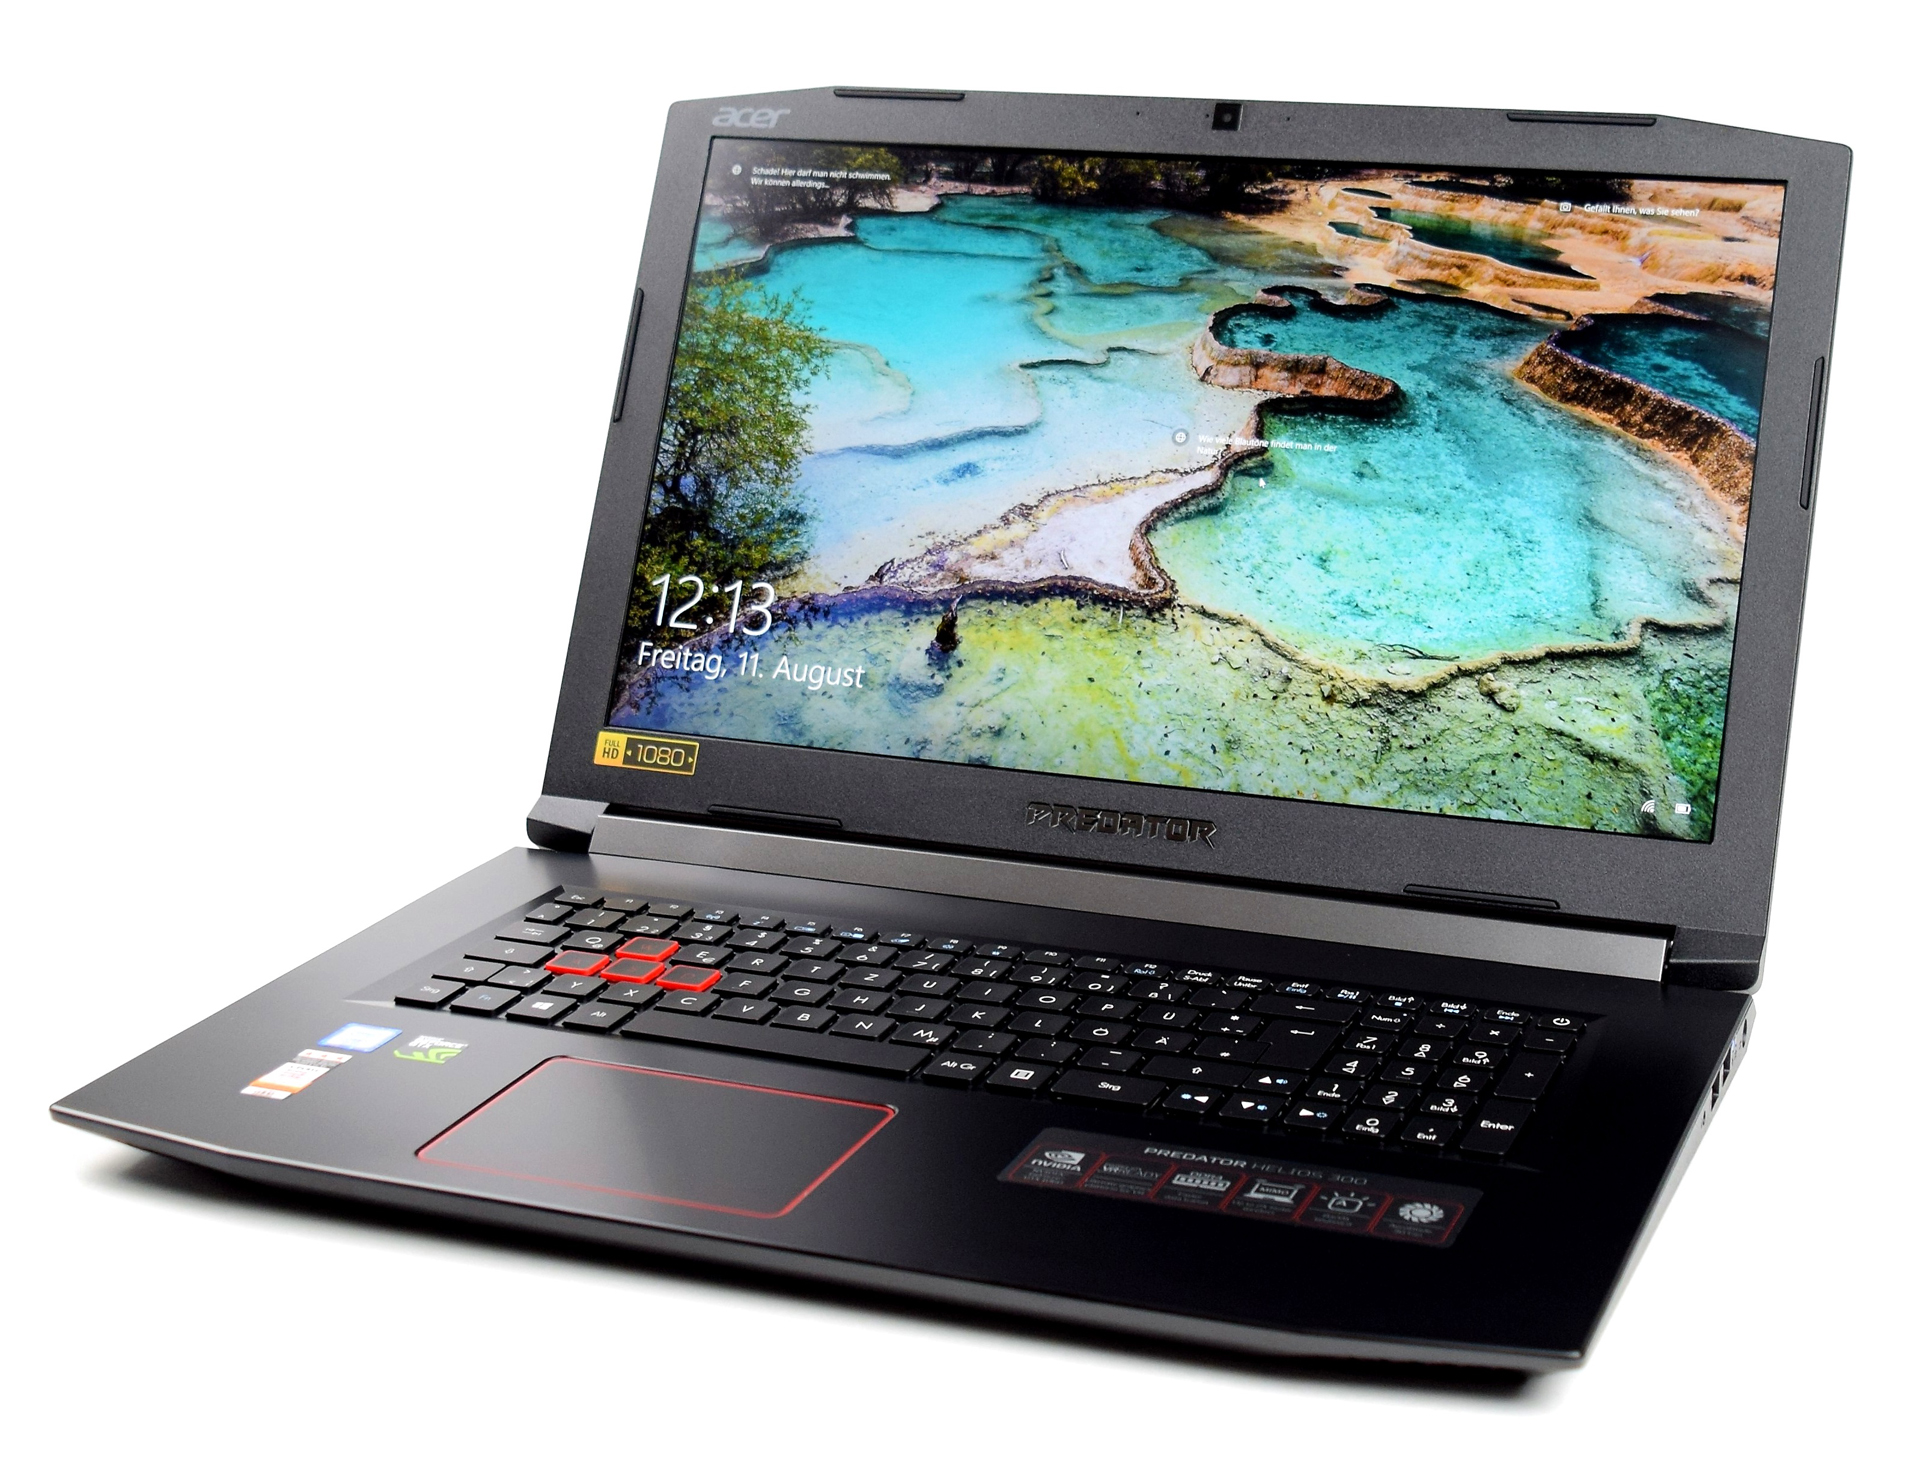 Acer Predator Helios 300 Gaming Laptop, 15.6 Full HD IPS, Intel i7 CPU,  16GB DDR4 RAM, 256GB SSD, GeForce GTX 1060-6GB, VR Ready, Red Backlit KB